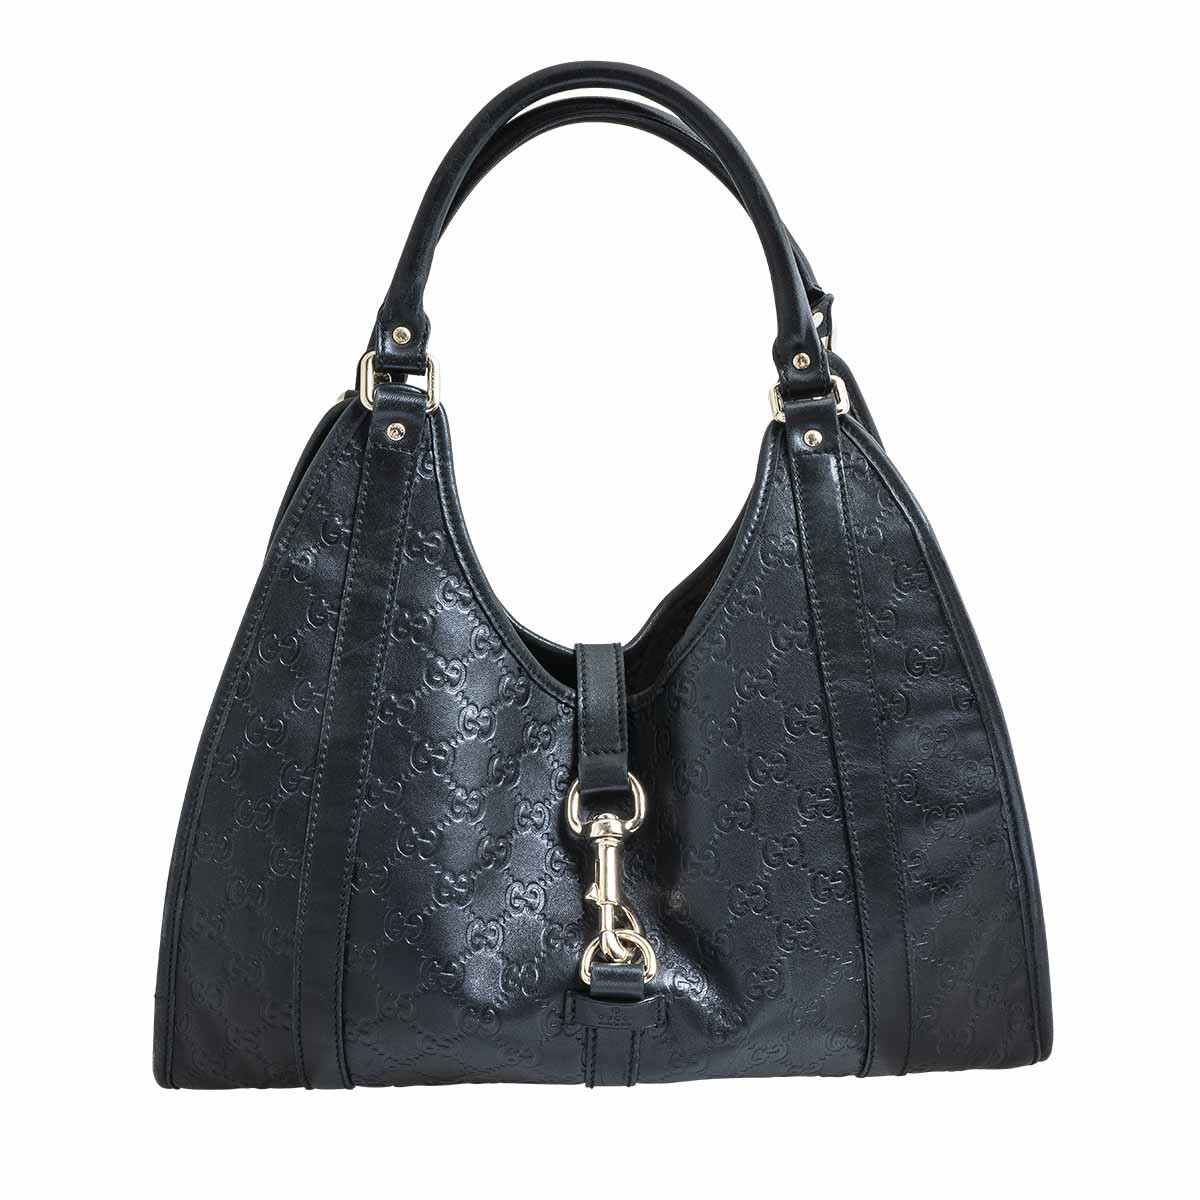 gucci shoulder bag black leather